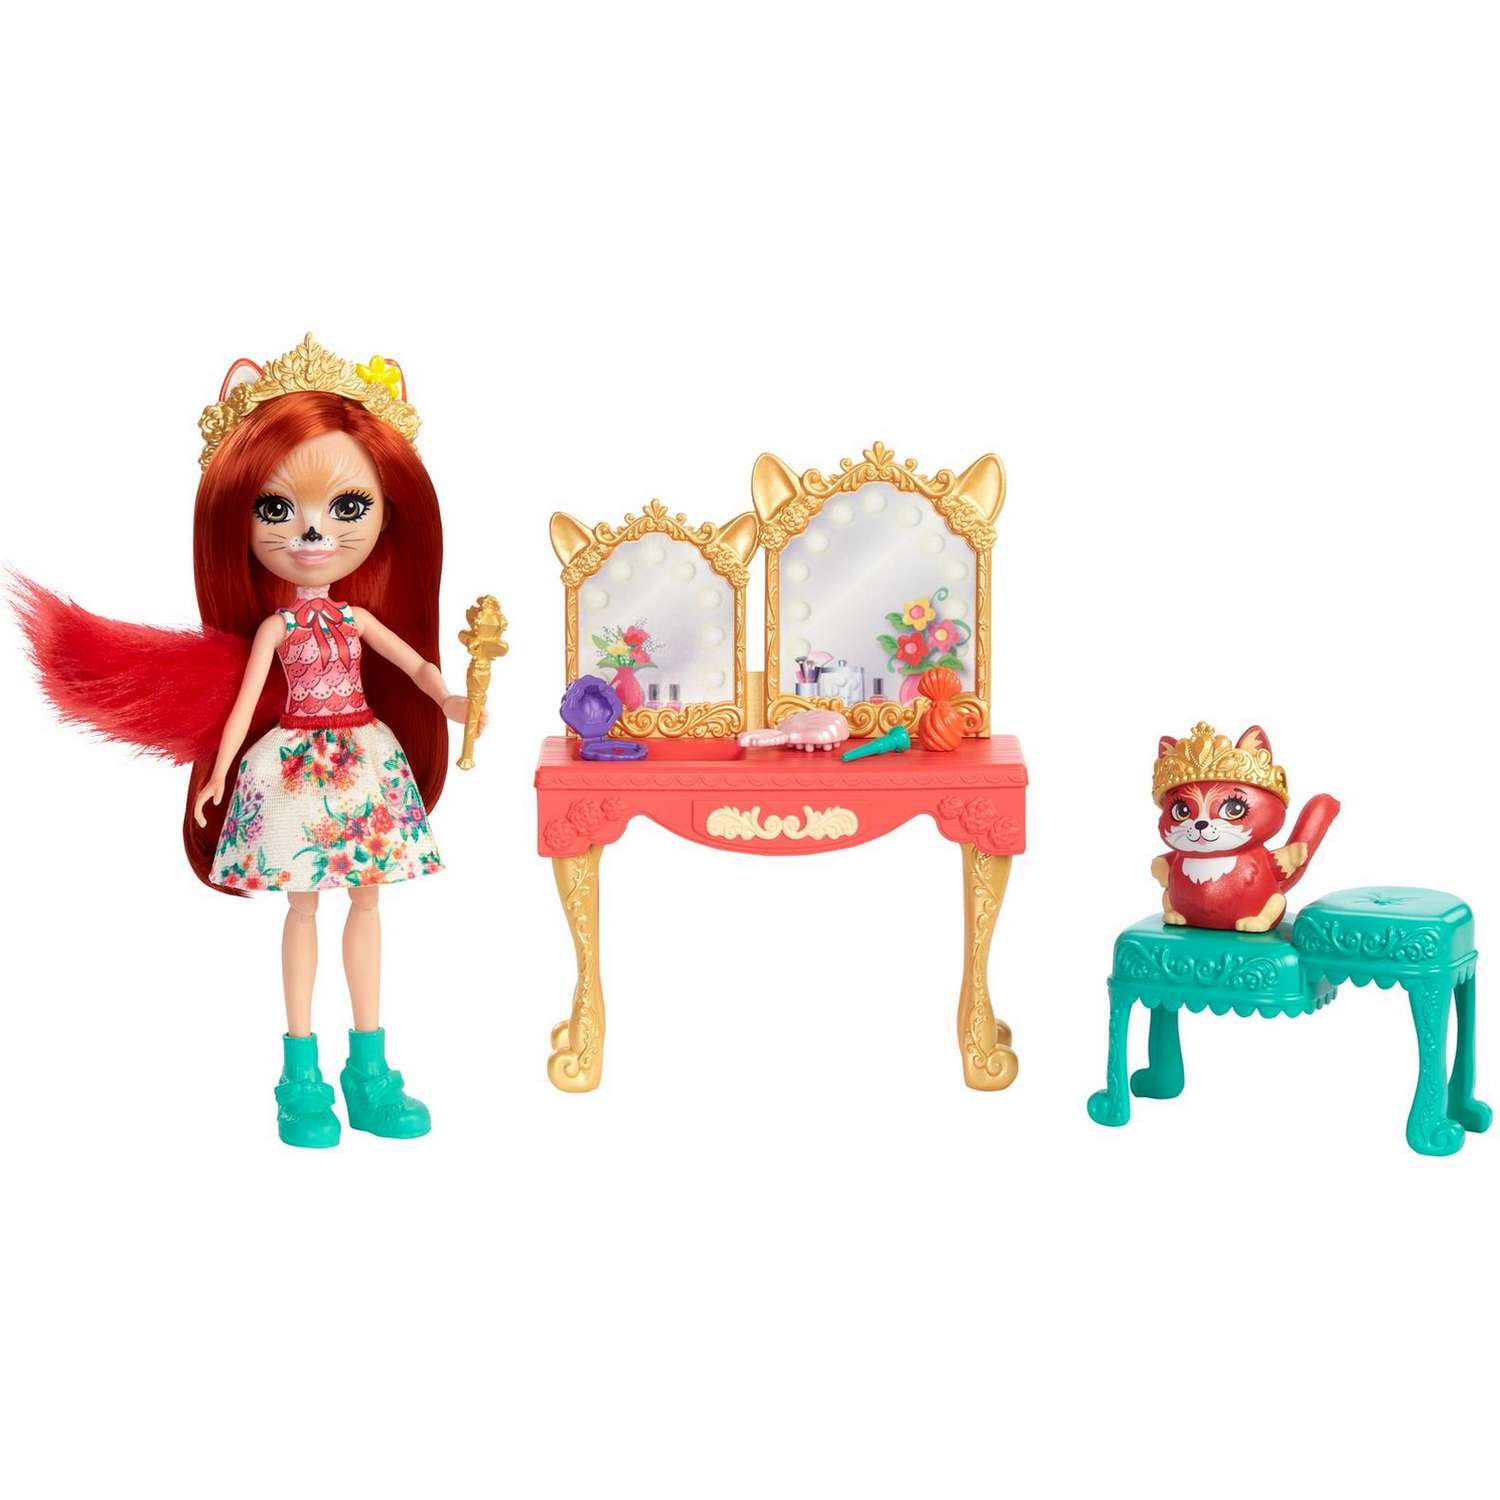 Набор игровой Enchantimals кукла+питомец с аксессуарами Викторианский туалетный столик GYJ05 GJX35 - фото 2